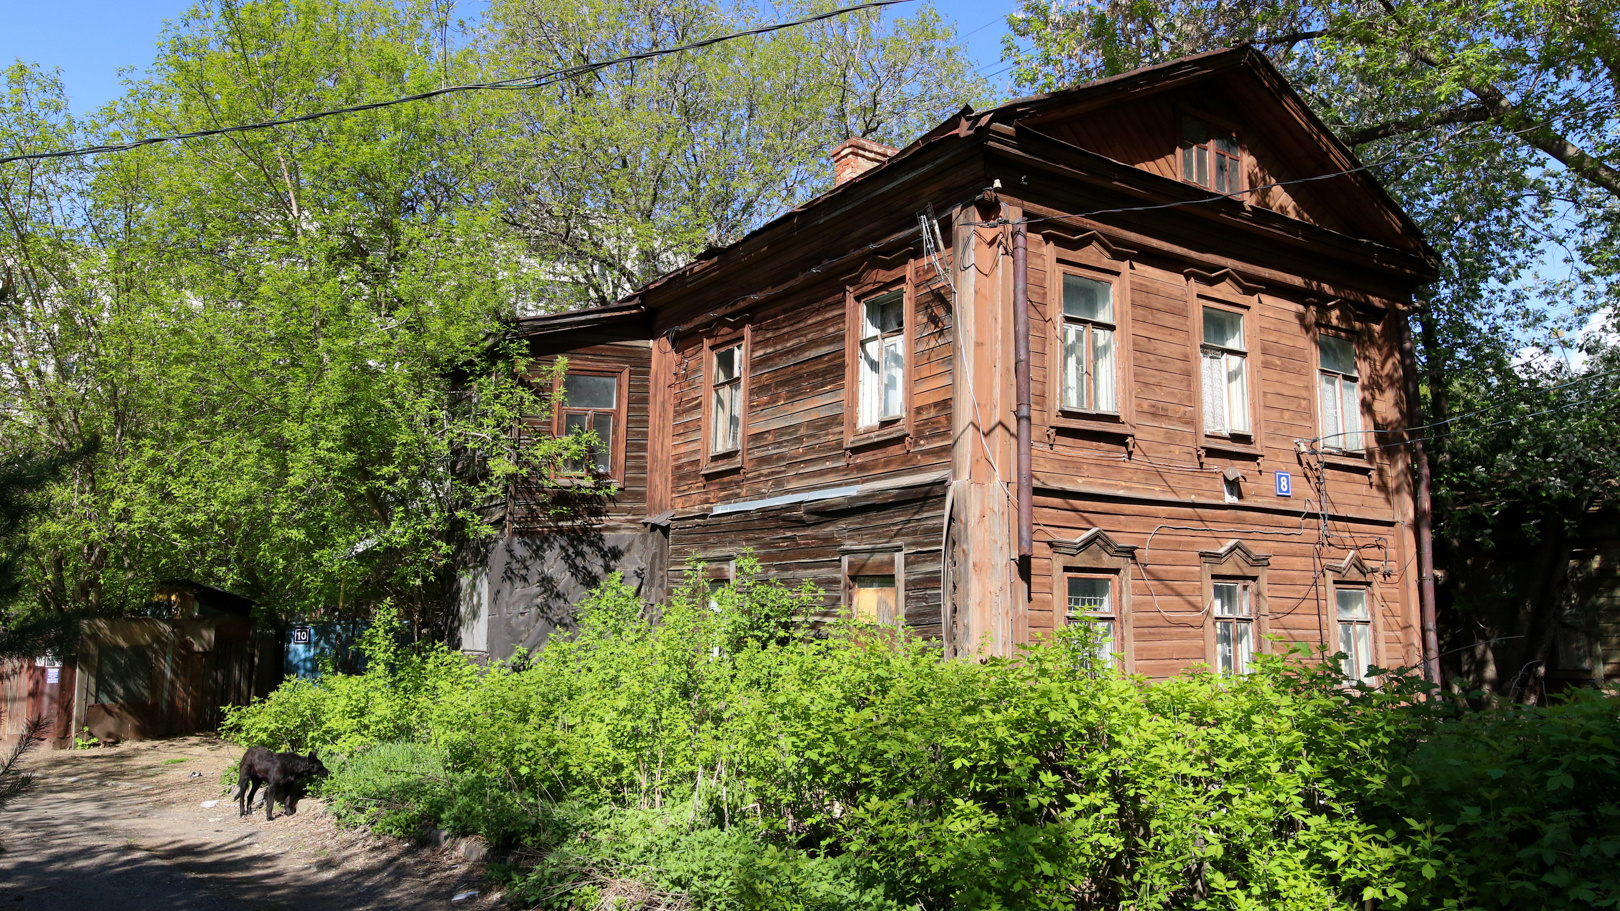 Здесь 40 лет жили без воды и тепла. «Проклятый старый дом» в центре Казани наконец расселили и продали